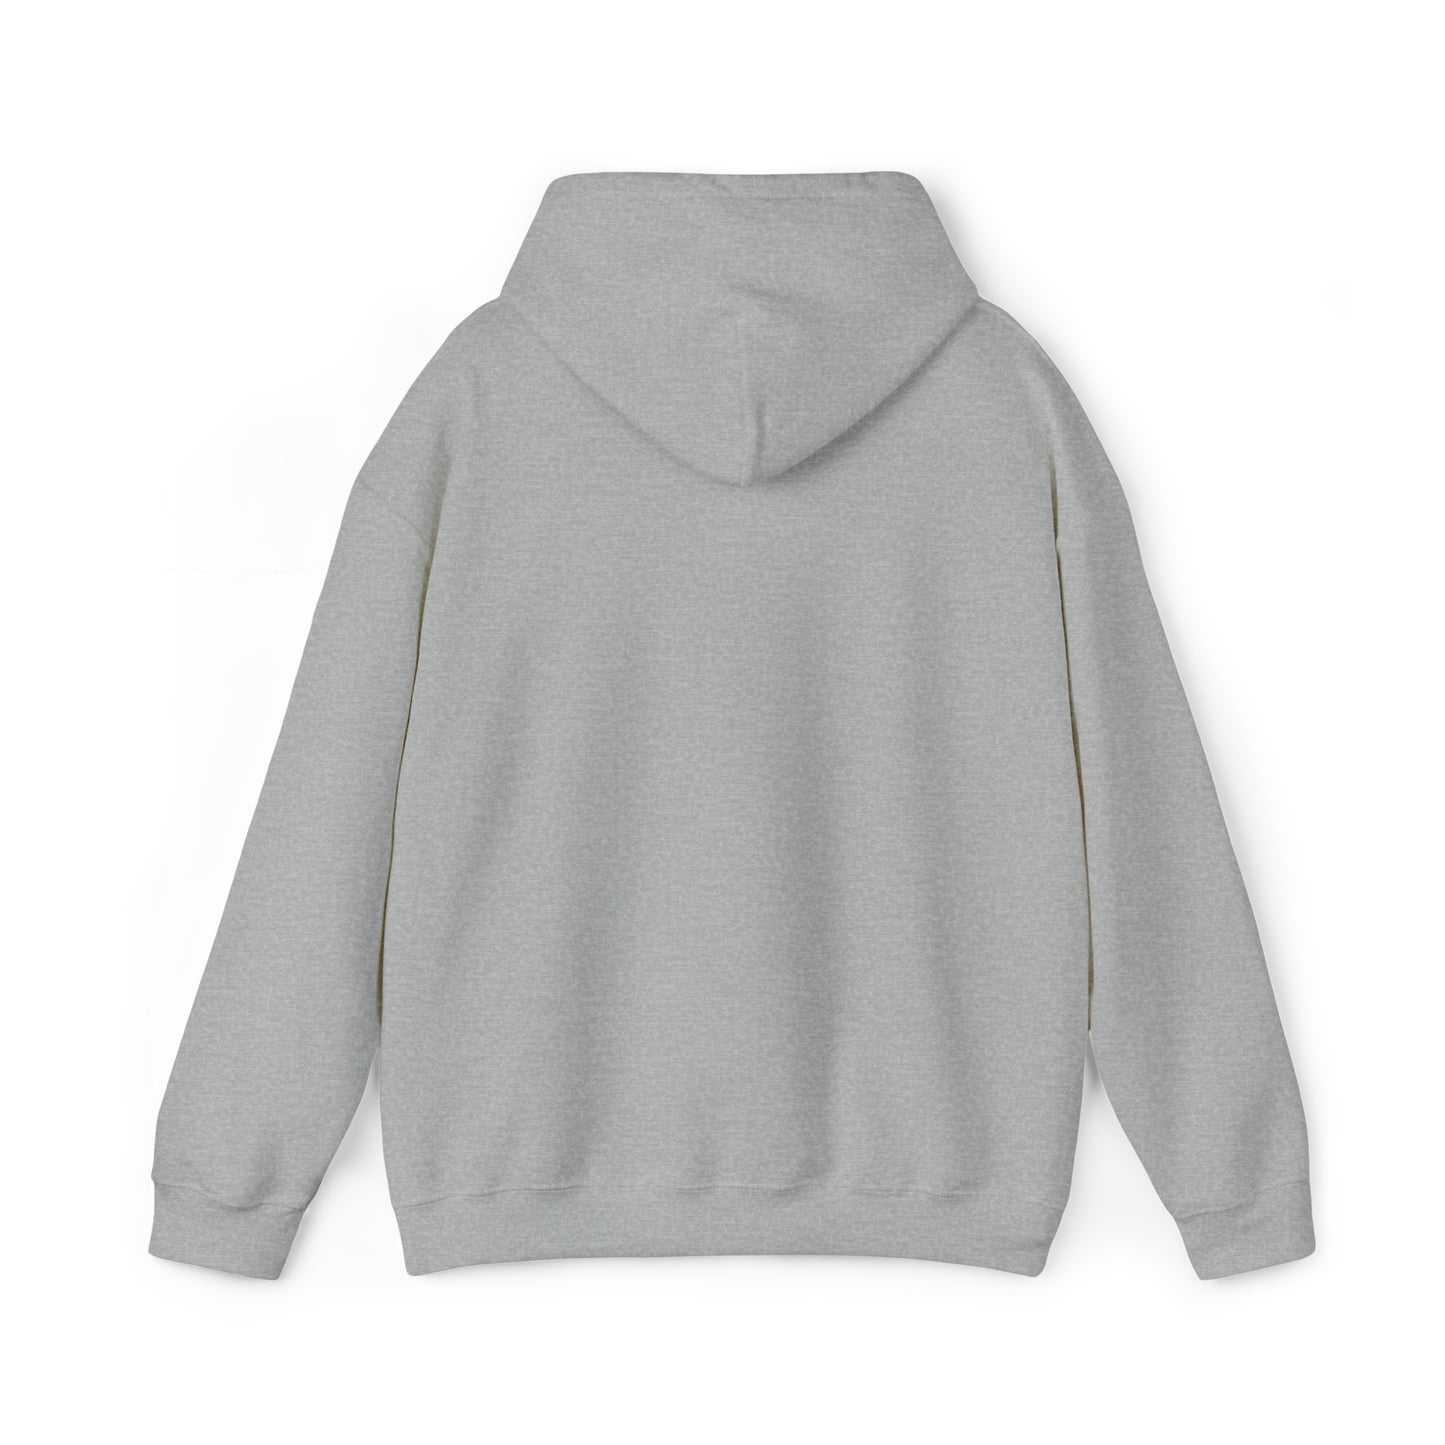 A Unisex Heavy Blend™ Hooded Sweatshirt